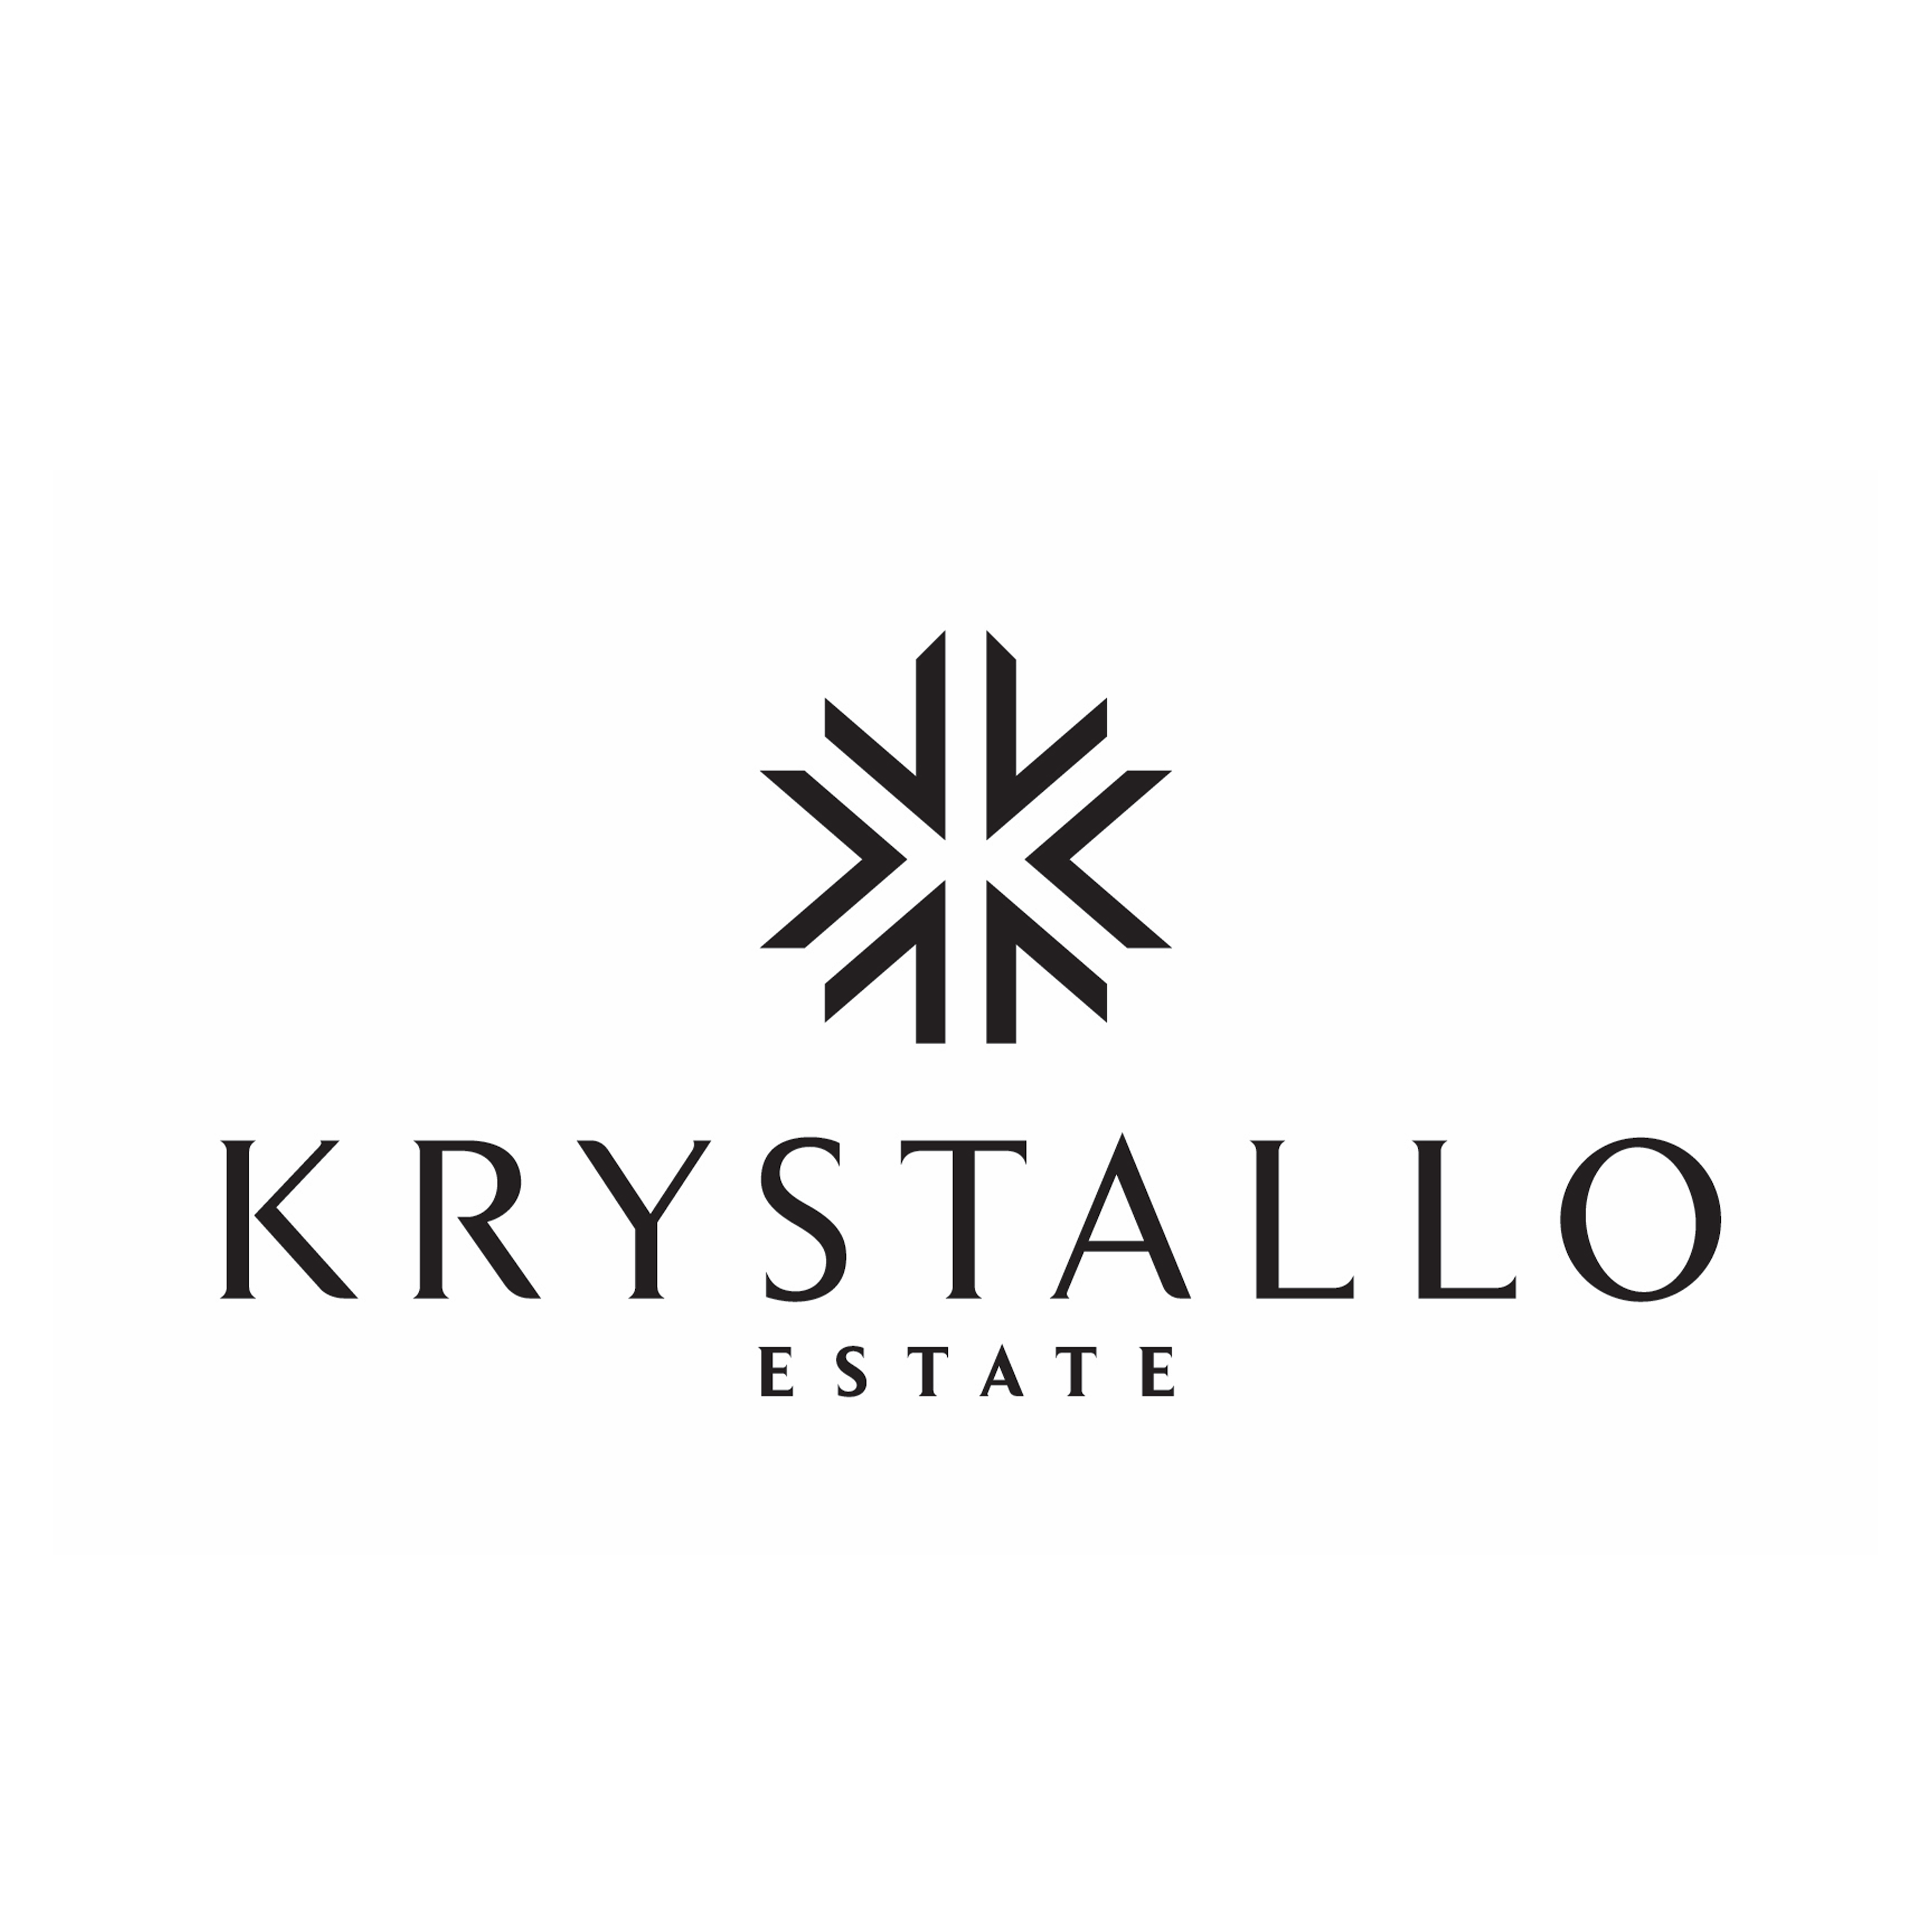 Krystallo logo